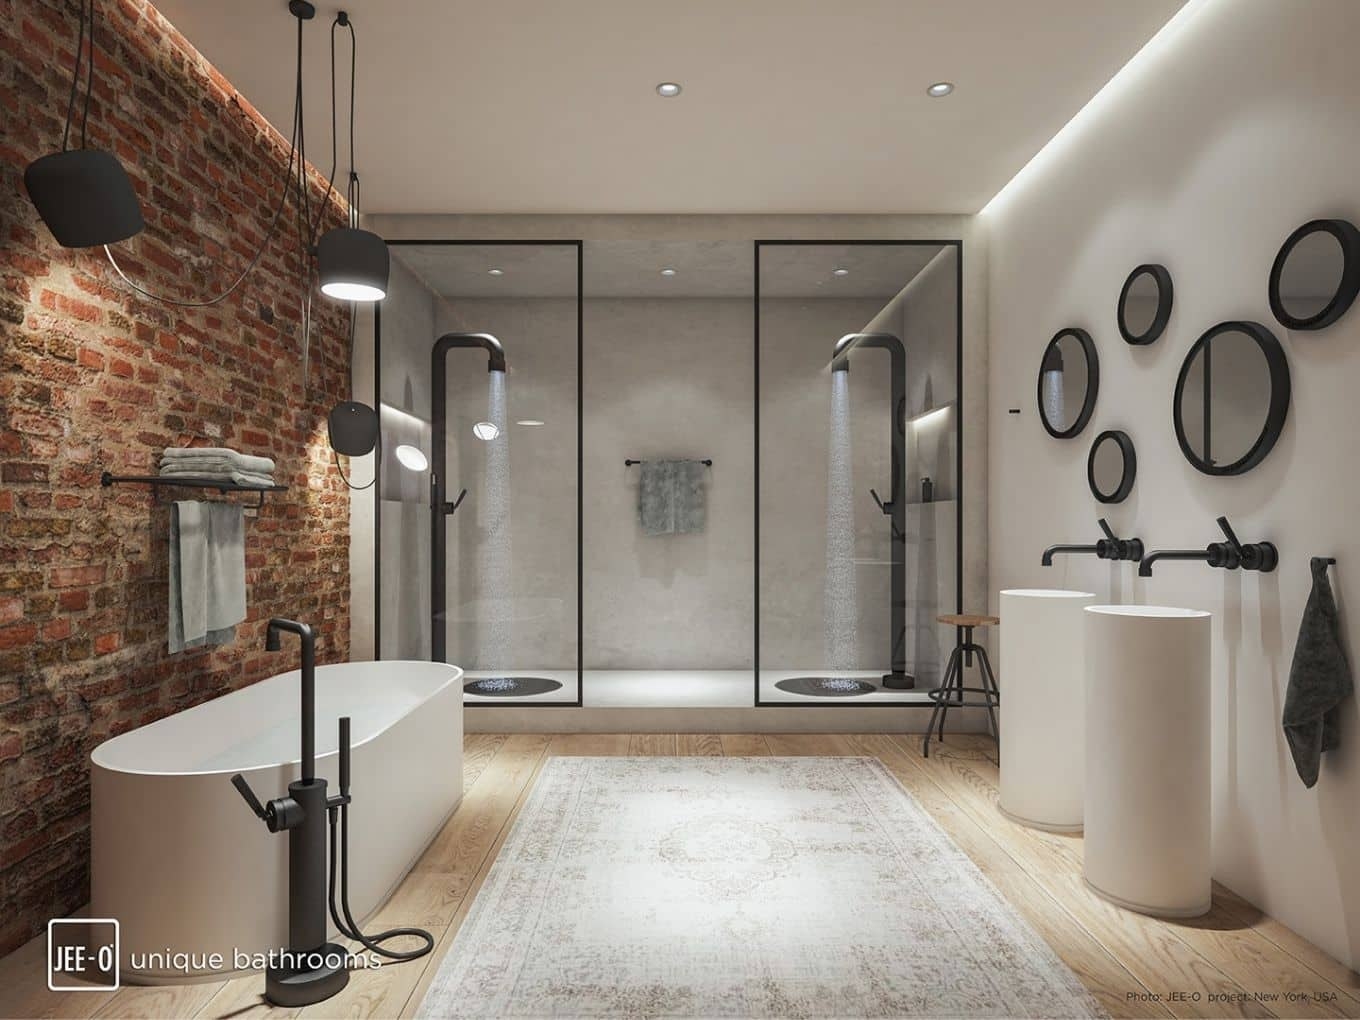 Der Industrial Style Zieht Ins Bad Ein - Bathspiration pertaining to Badezimmer Industrial Design